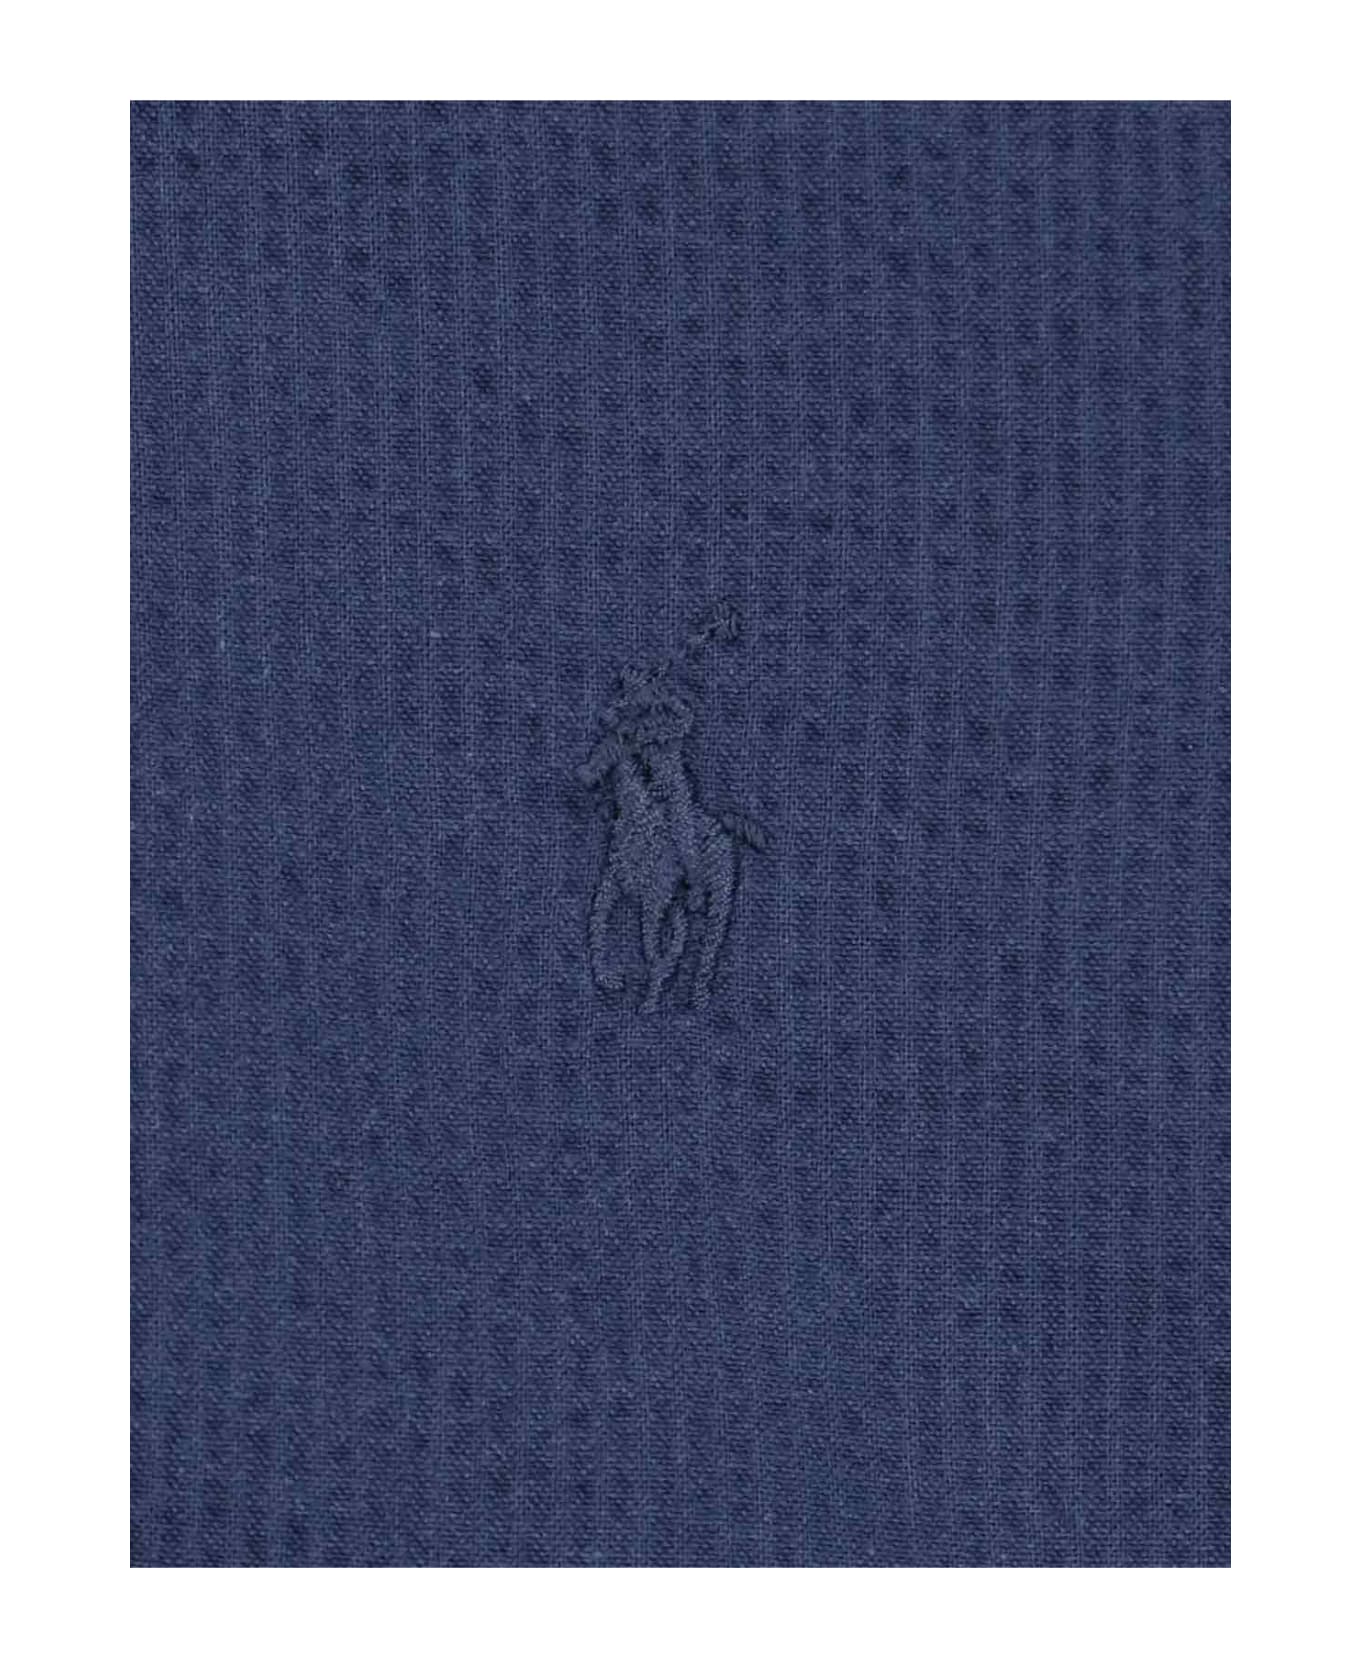 Polo Ralph Lauren Seersucker Shirt - Blue